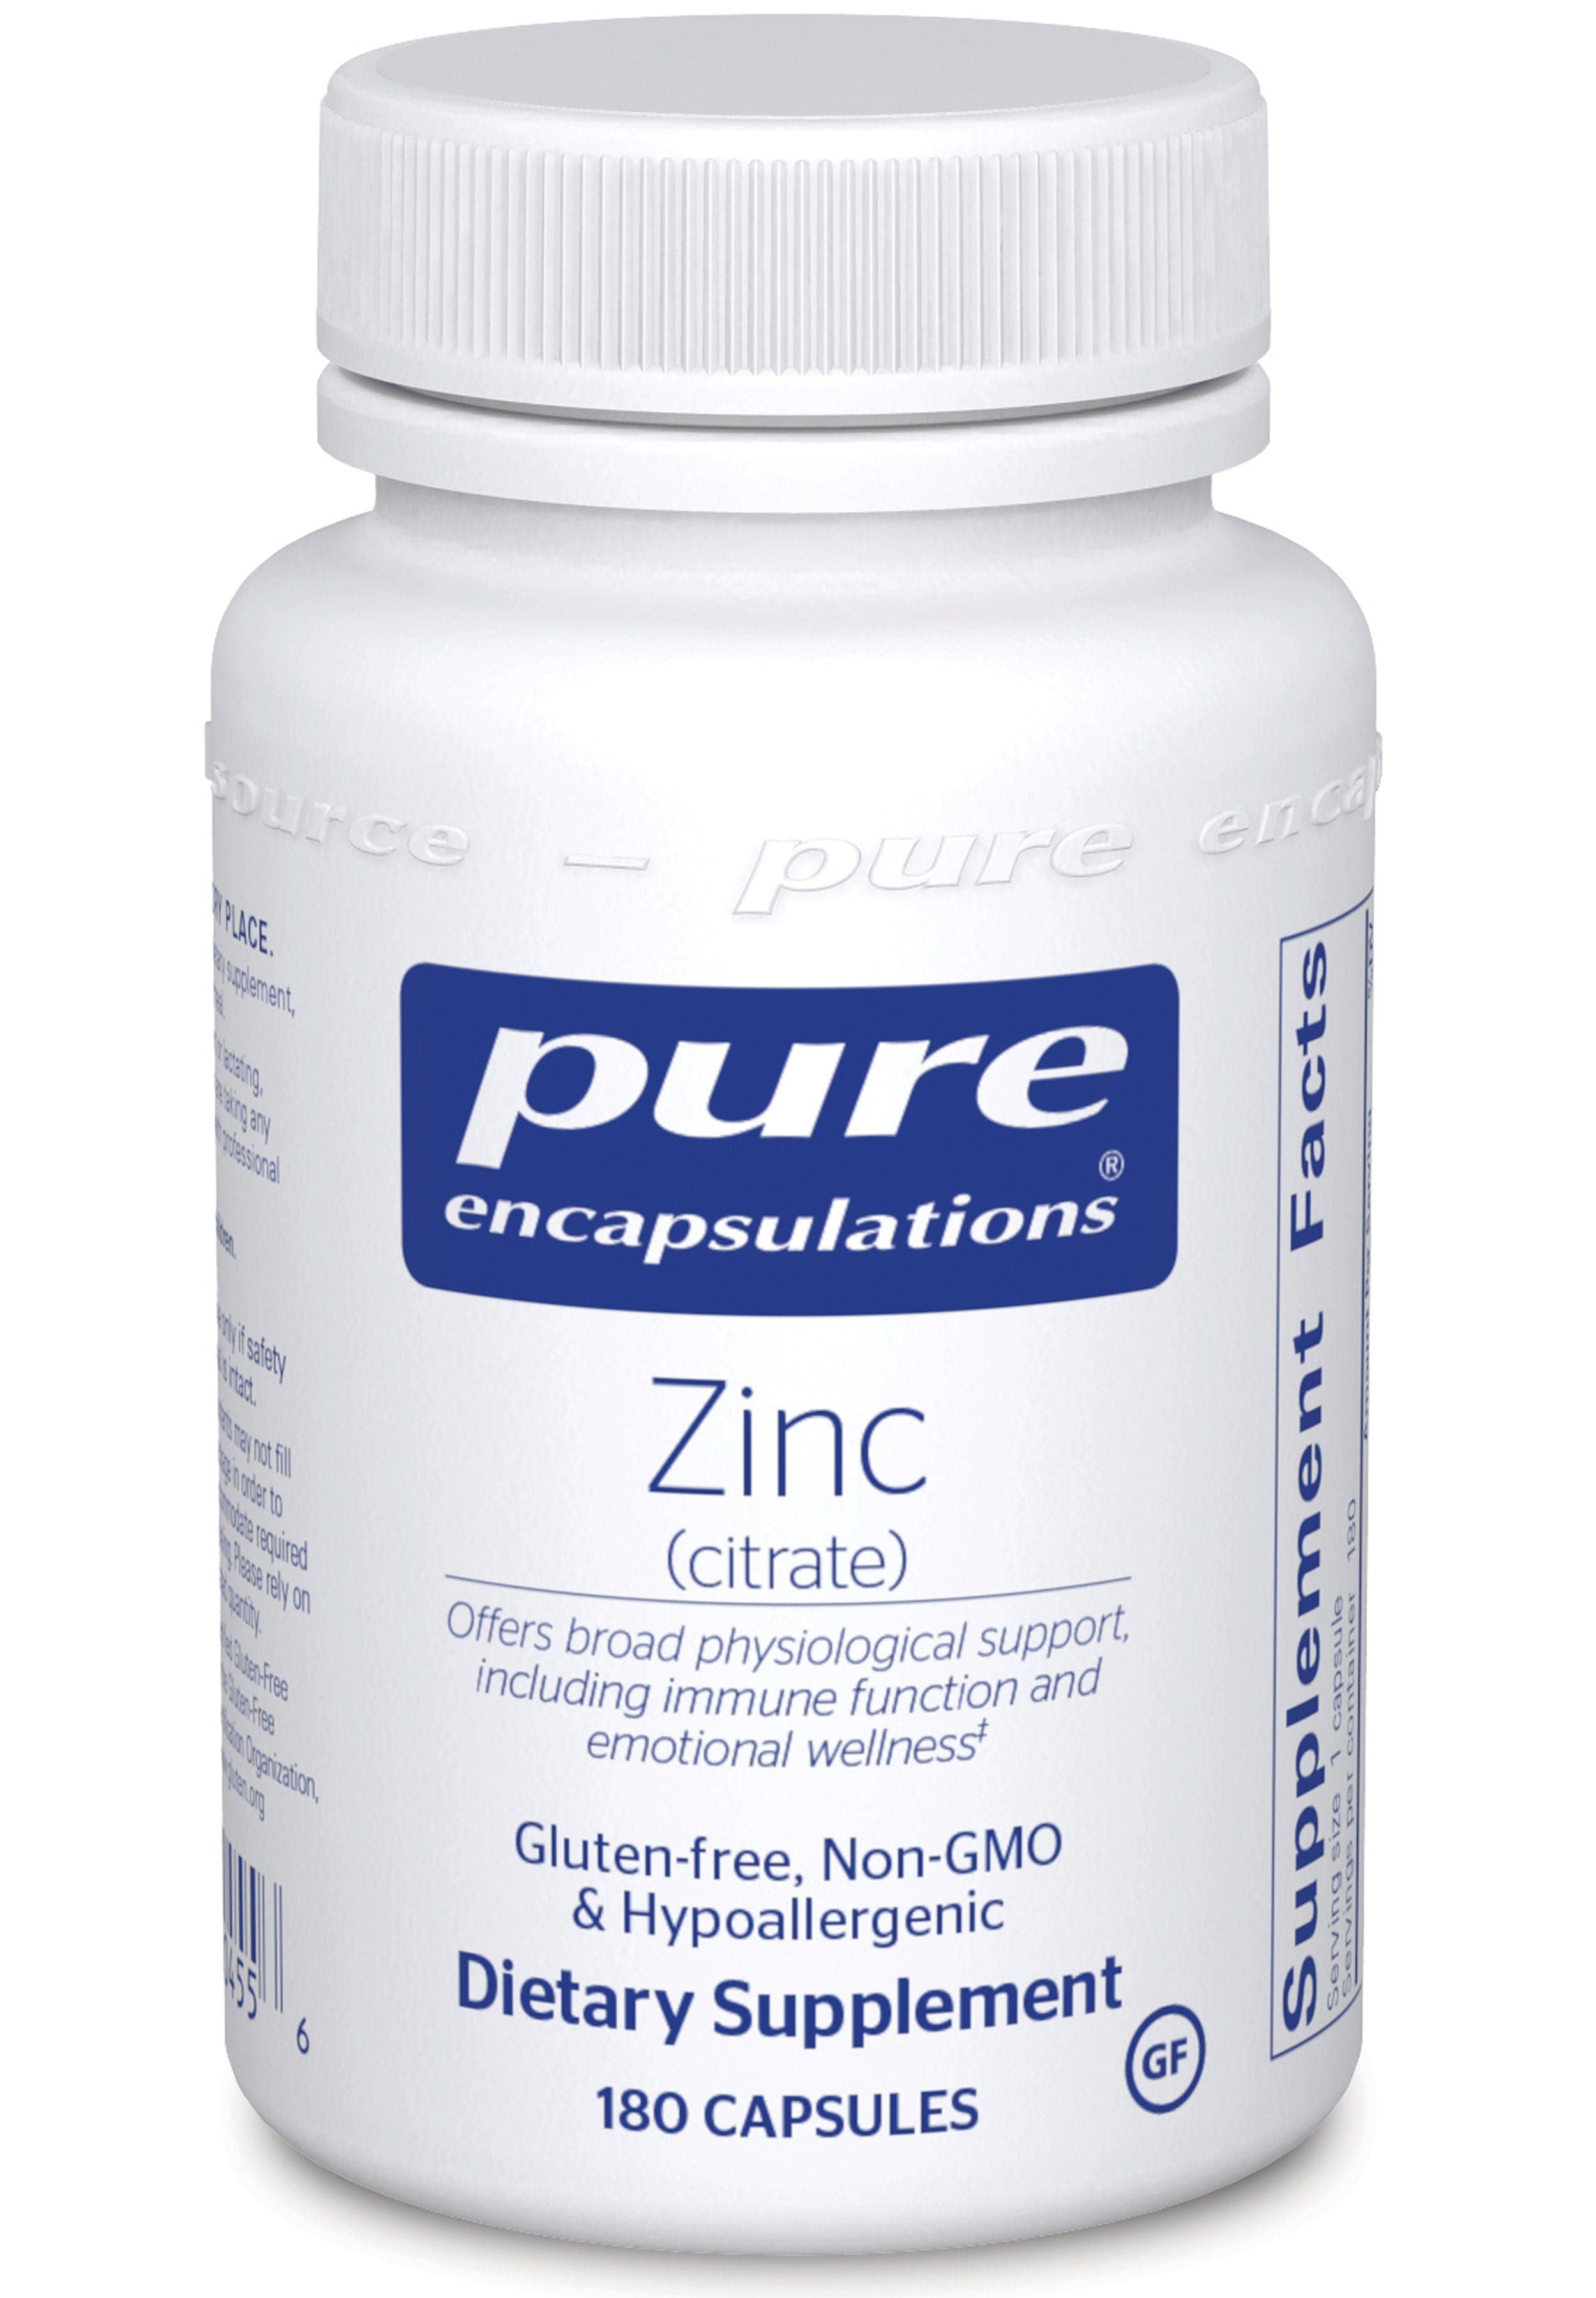 Pure Encapsulations Zinc (Citrate)